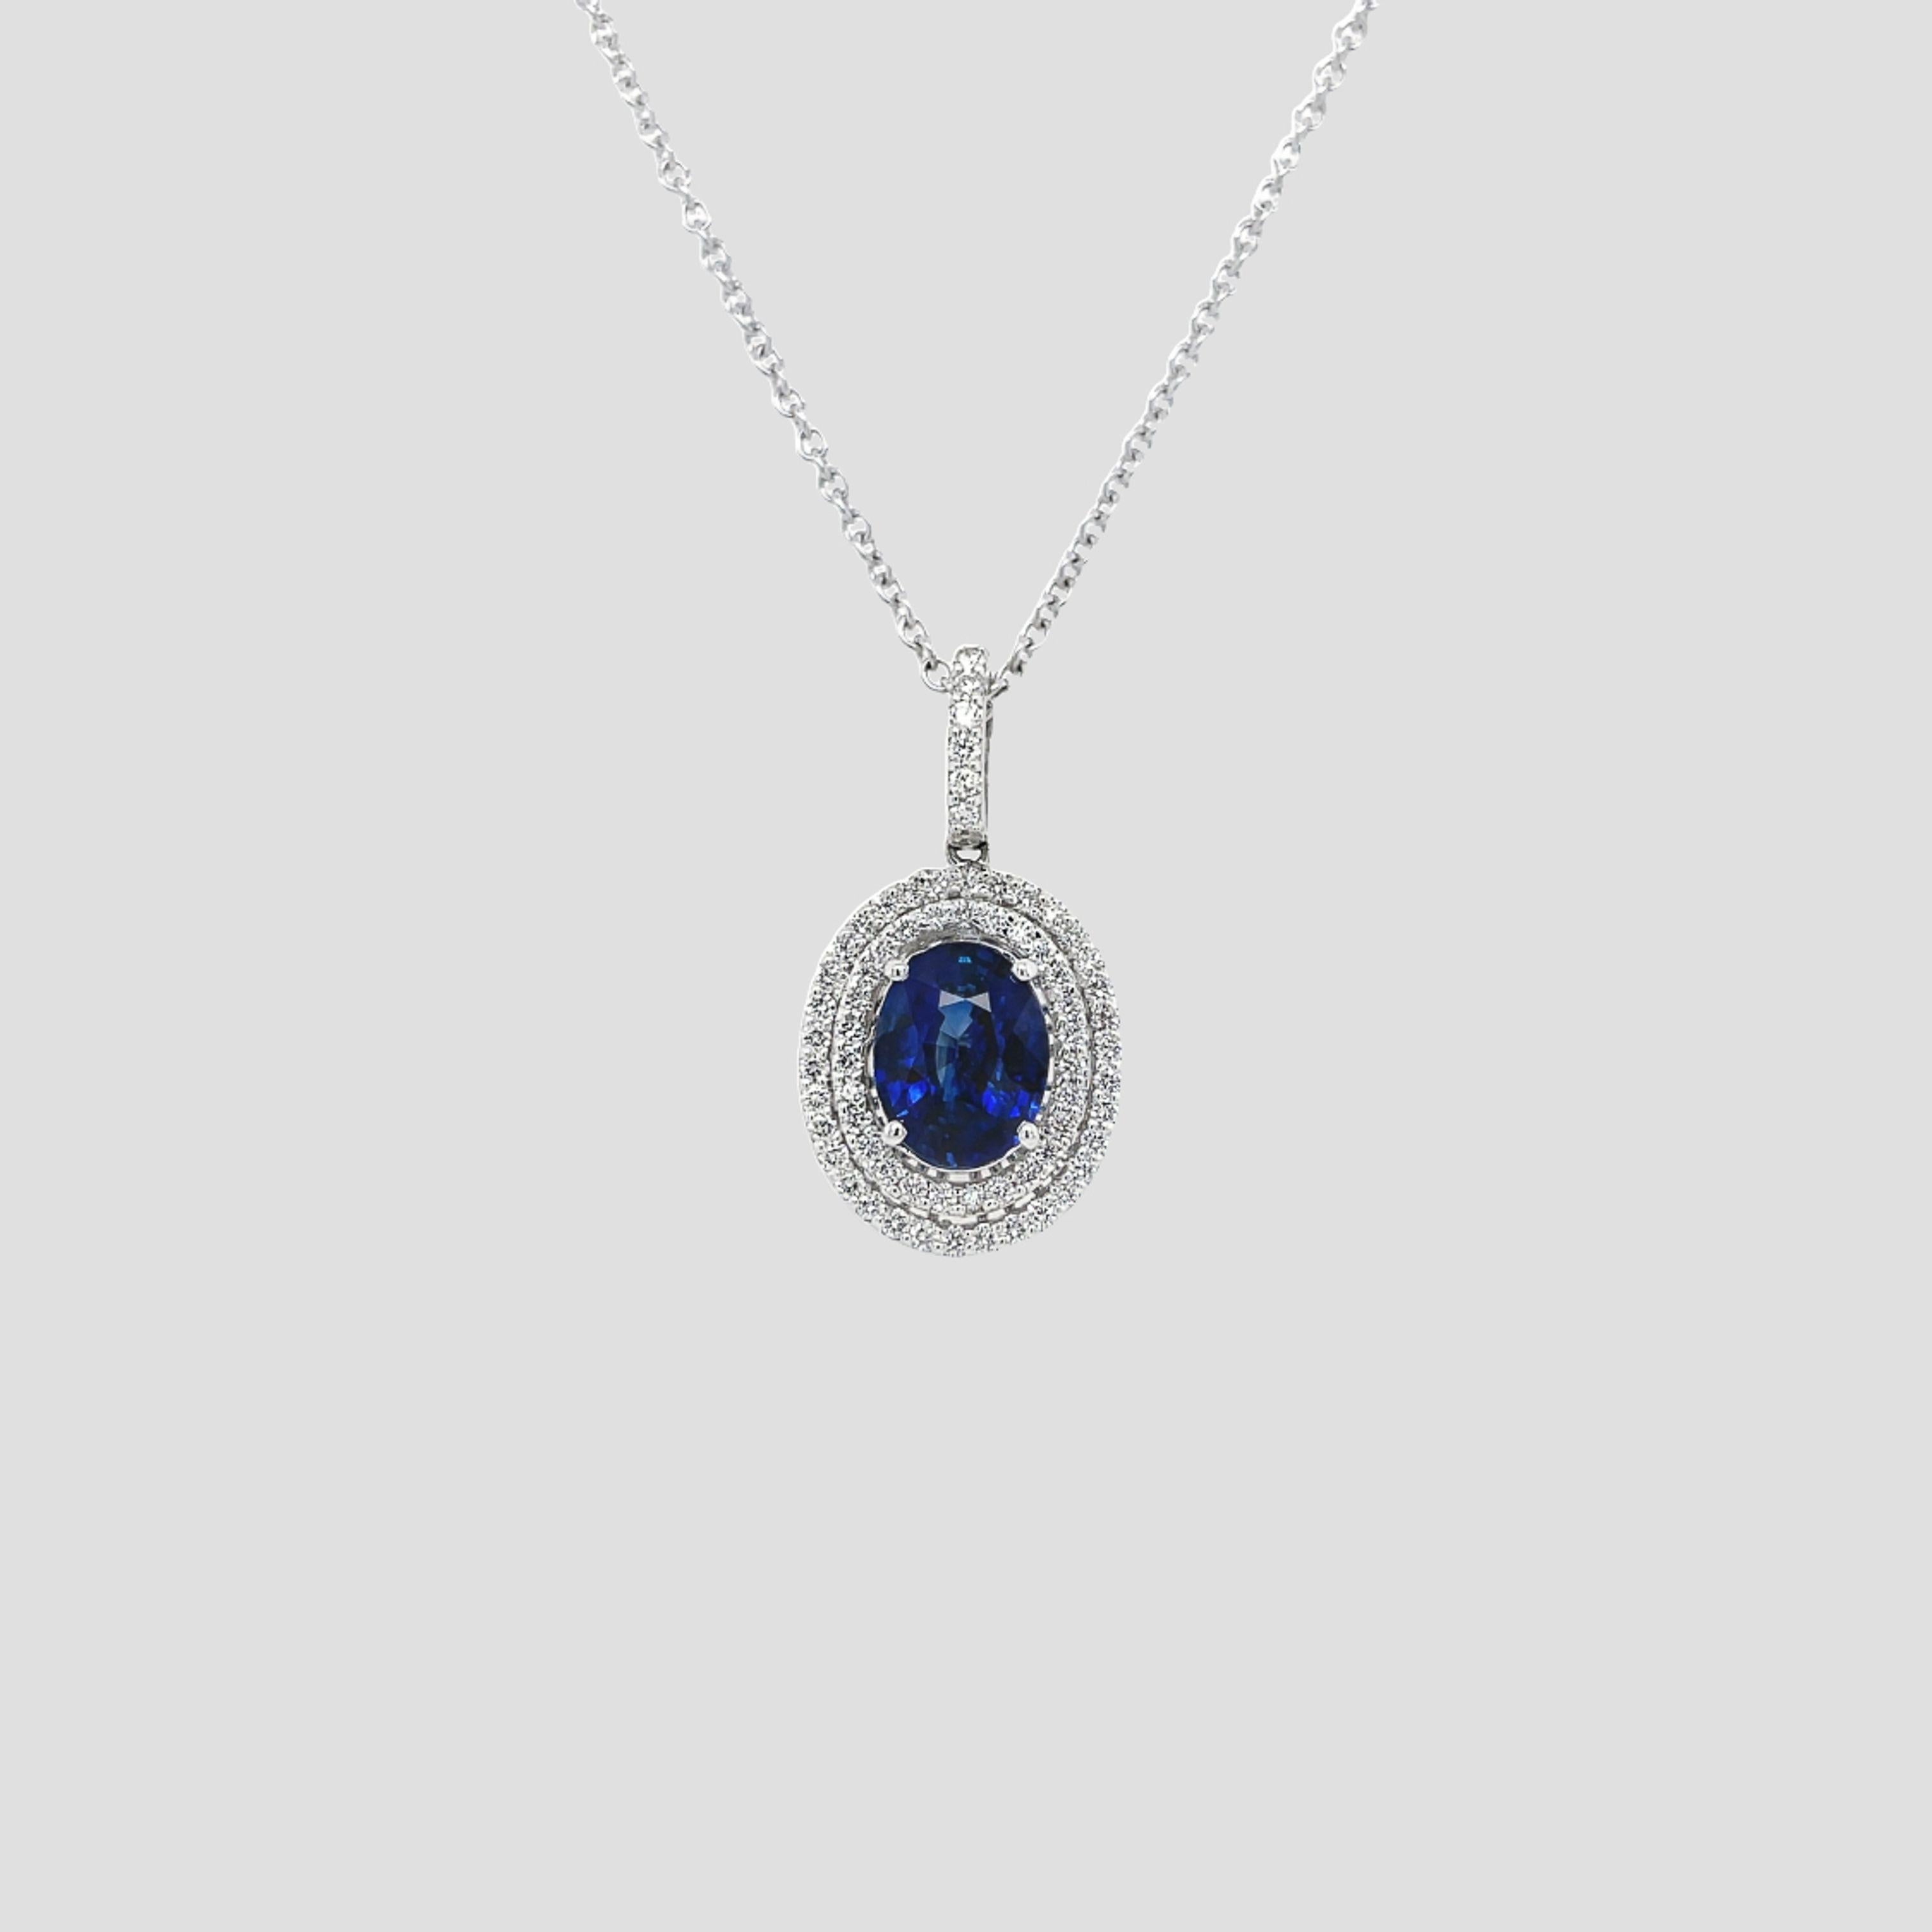 Ce pendentif de style classique contient 1 saphir ovale brillant, 2,12ct. Le saphir est entouré de 68 diamants ronds de taille brillant, 0,60tcw. Les diamants sont de couleur G et de pureté VS2, d'une excellente taille. Toutes les pierres sont